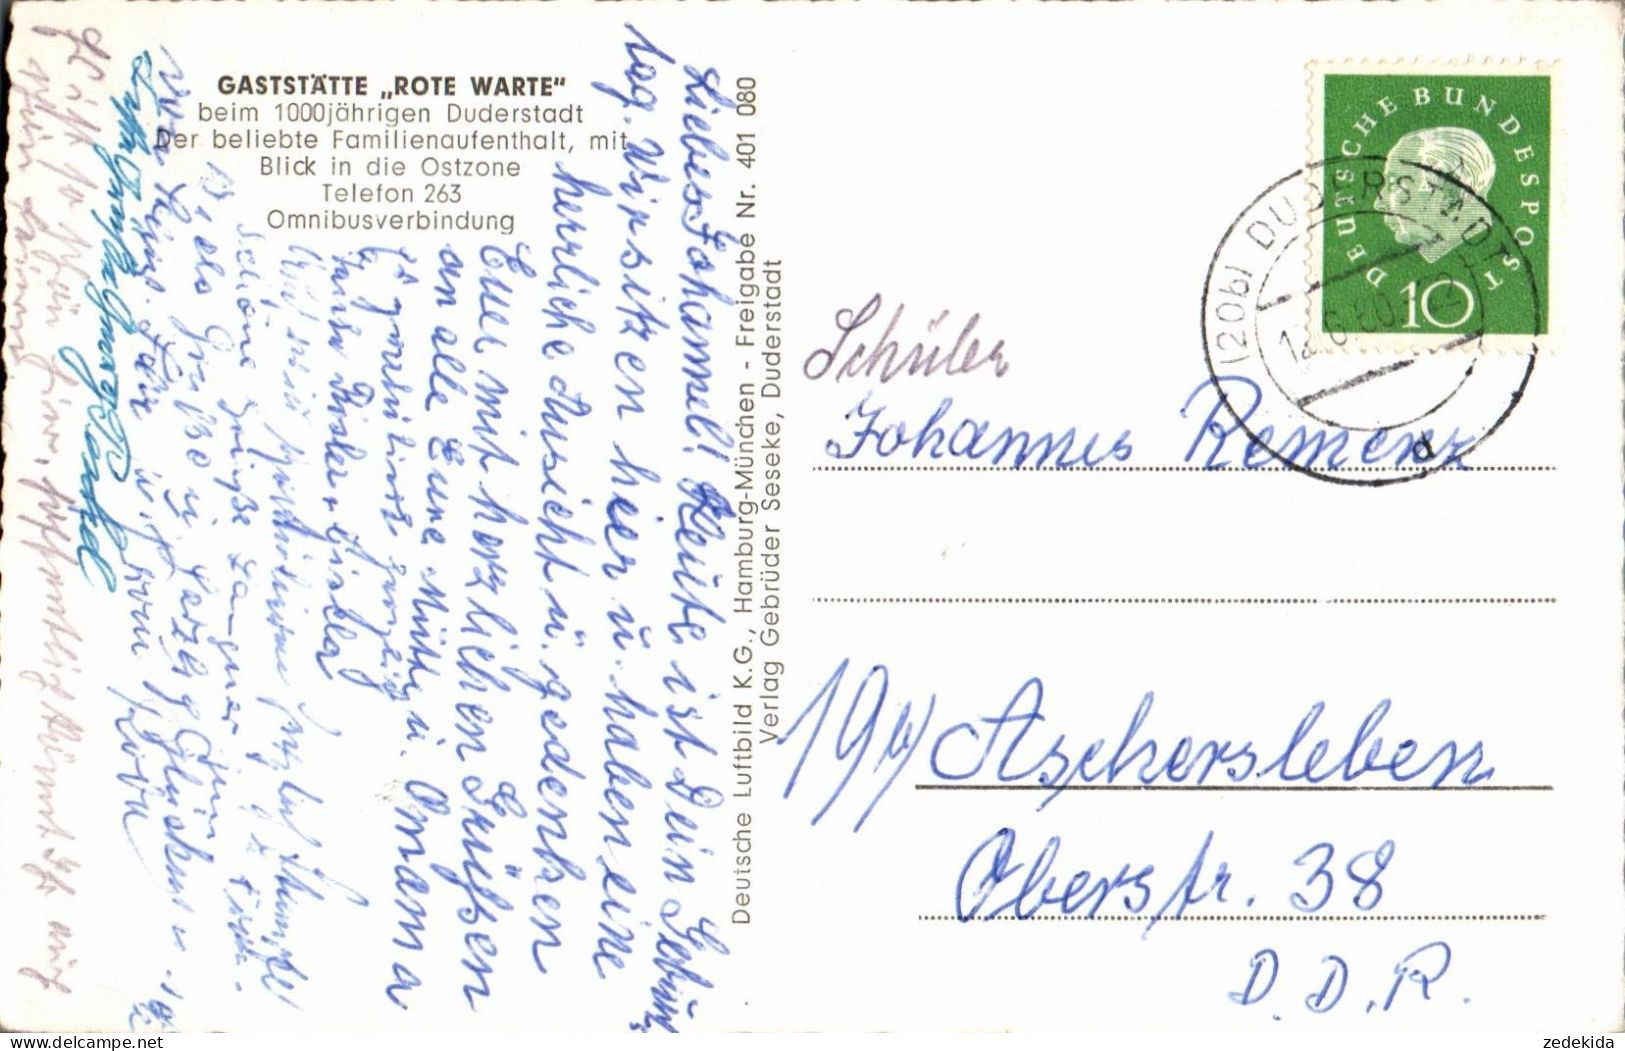 H1681 - Duderstadt - Gaststätte Rote Warte - Luftbild Luftaufnahme - Verlag Seseke - Duderstadt